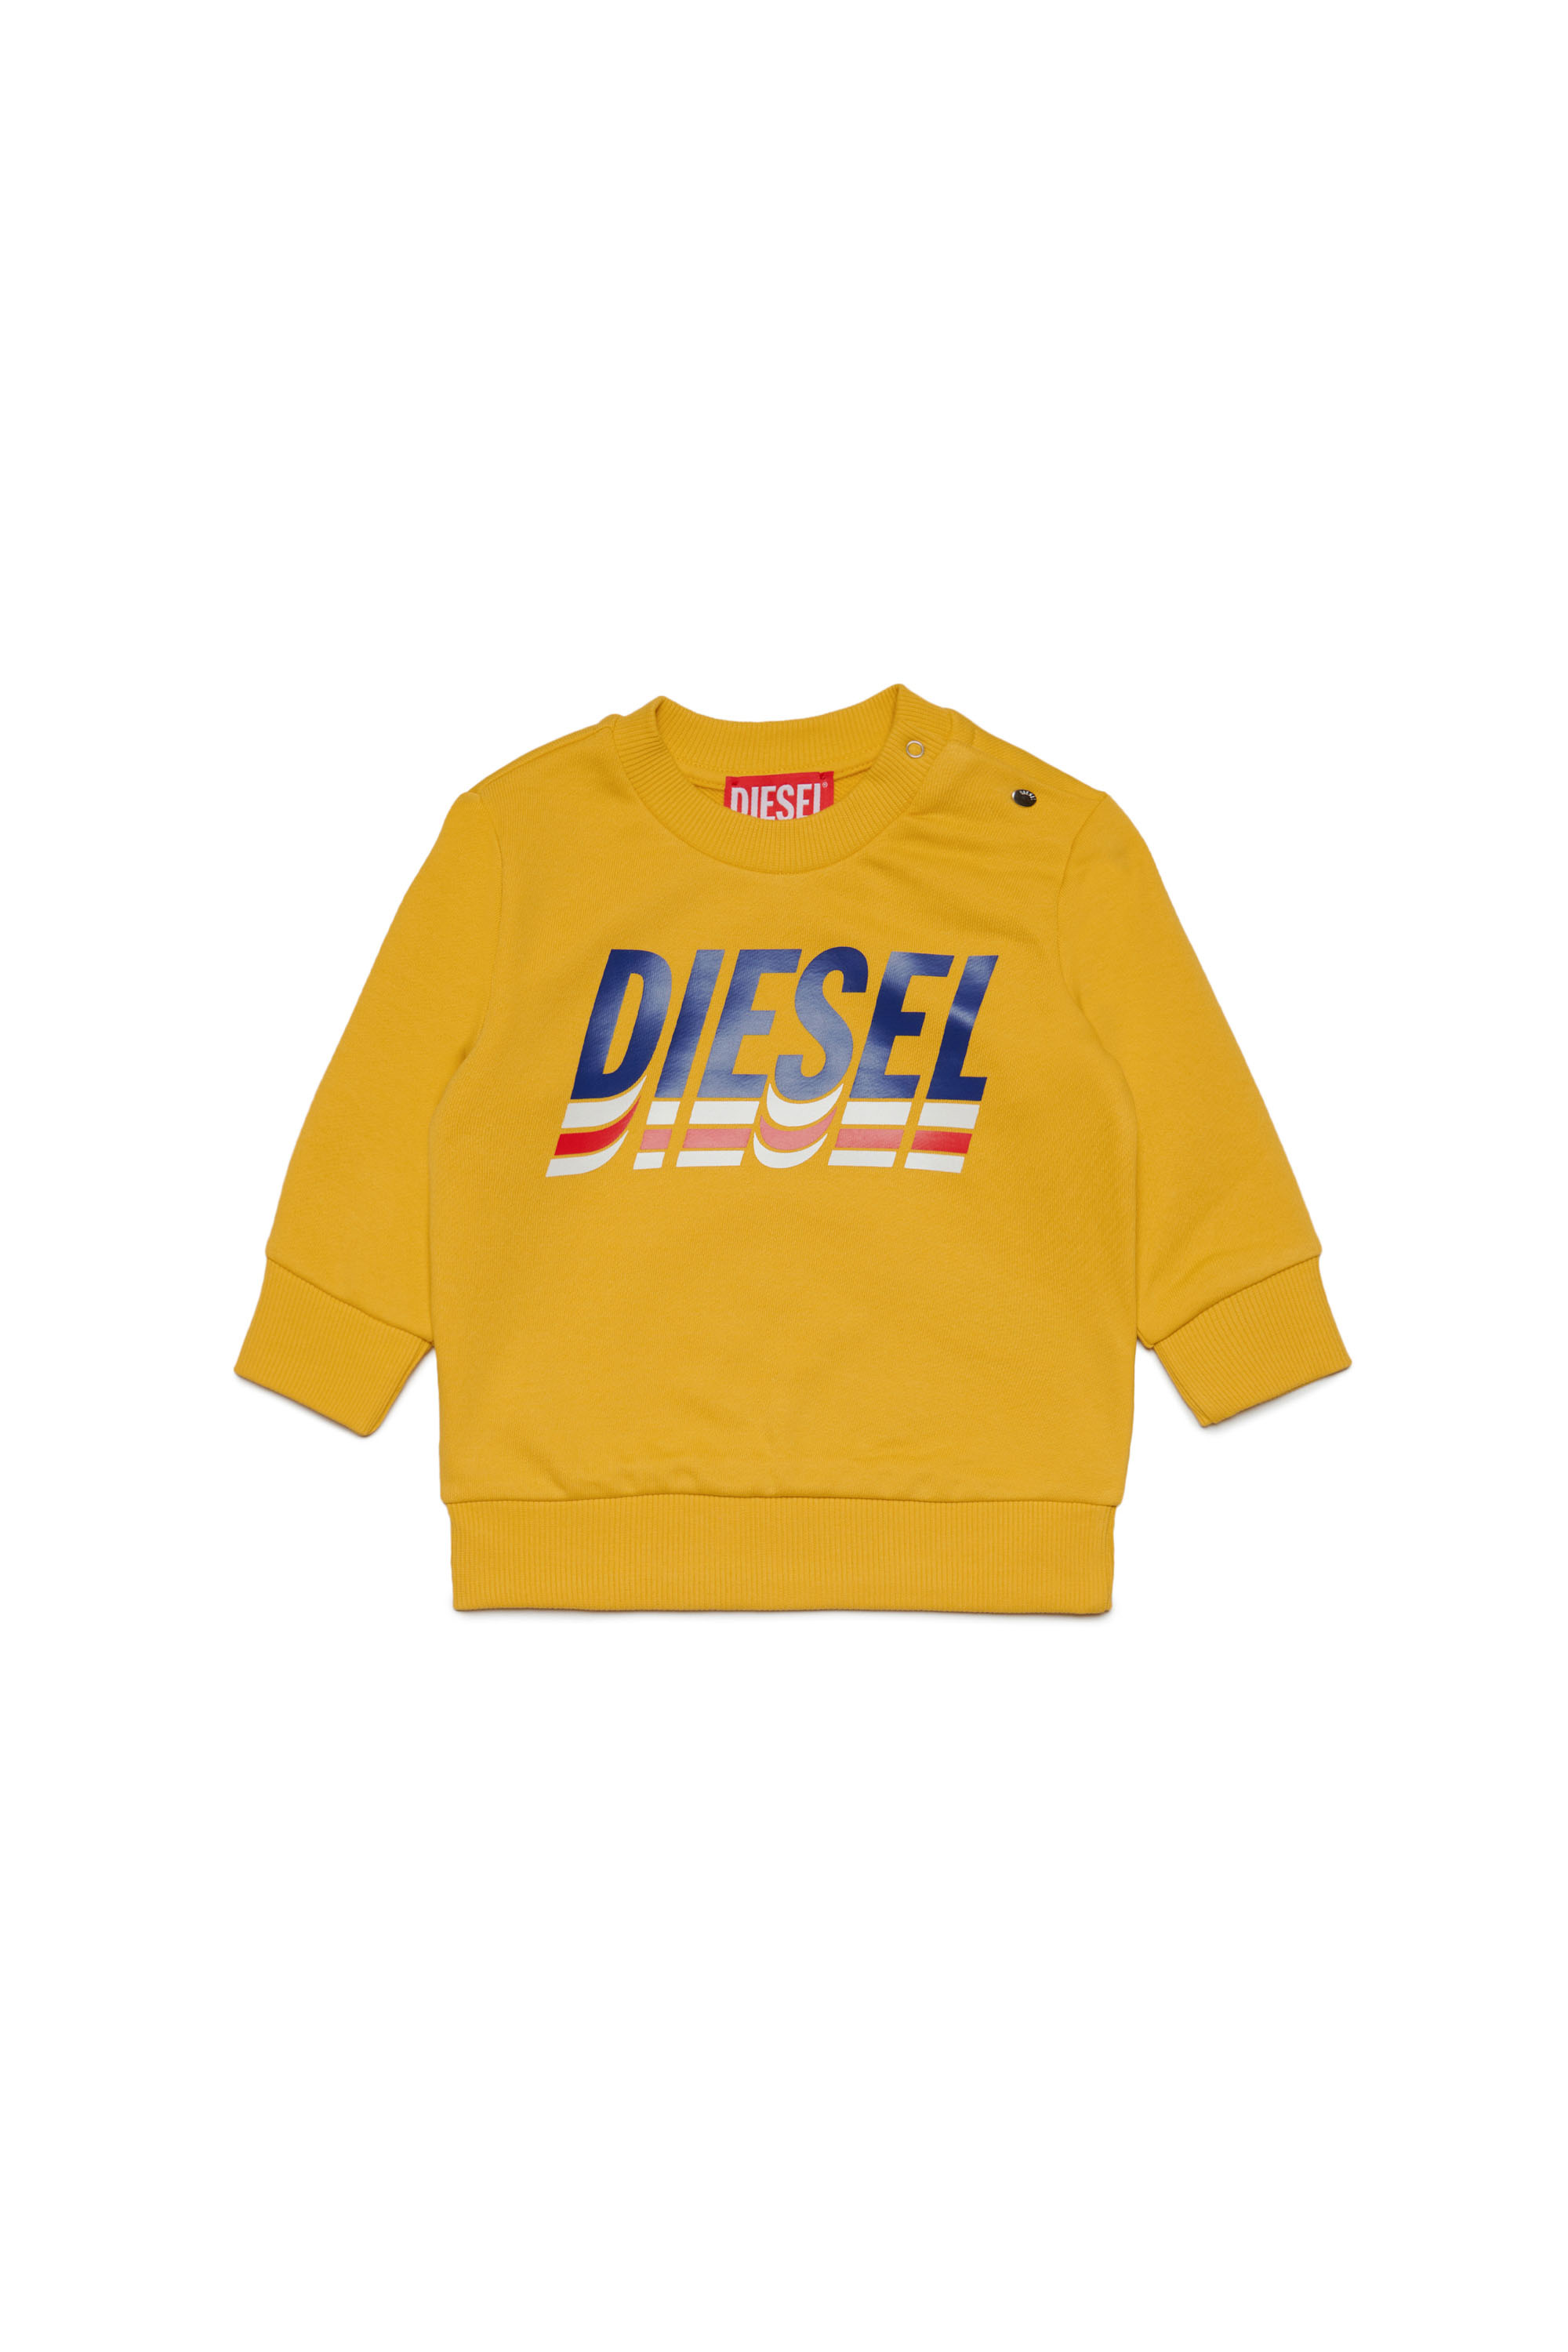 Diesel - Sweat-shirt avec logo tricolore - Pull Cotton - Homme - Jaune